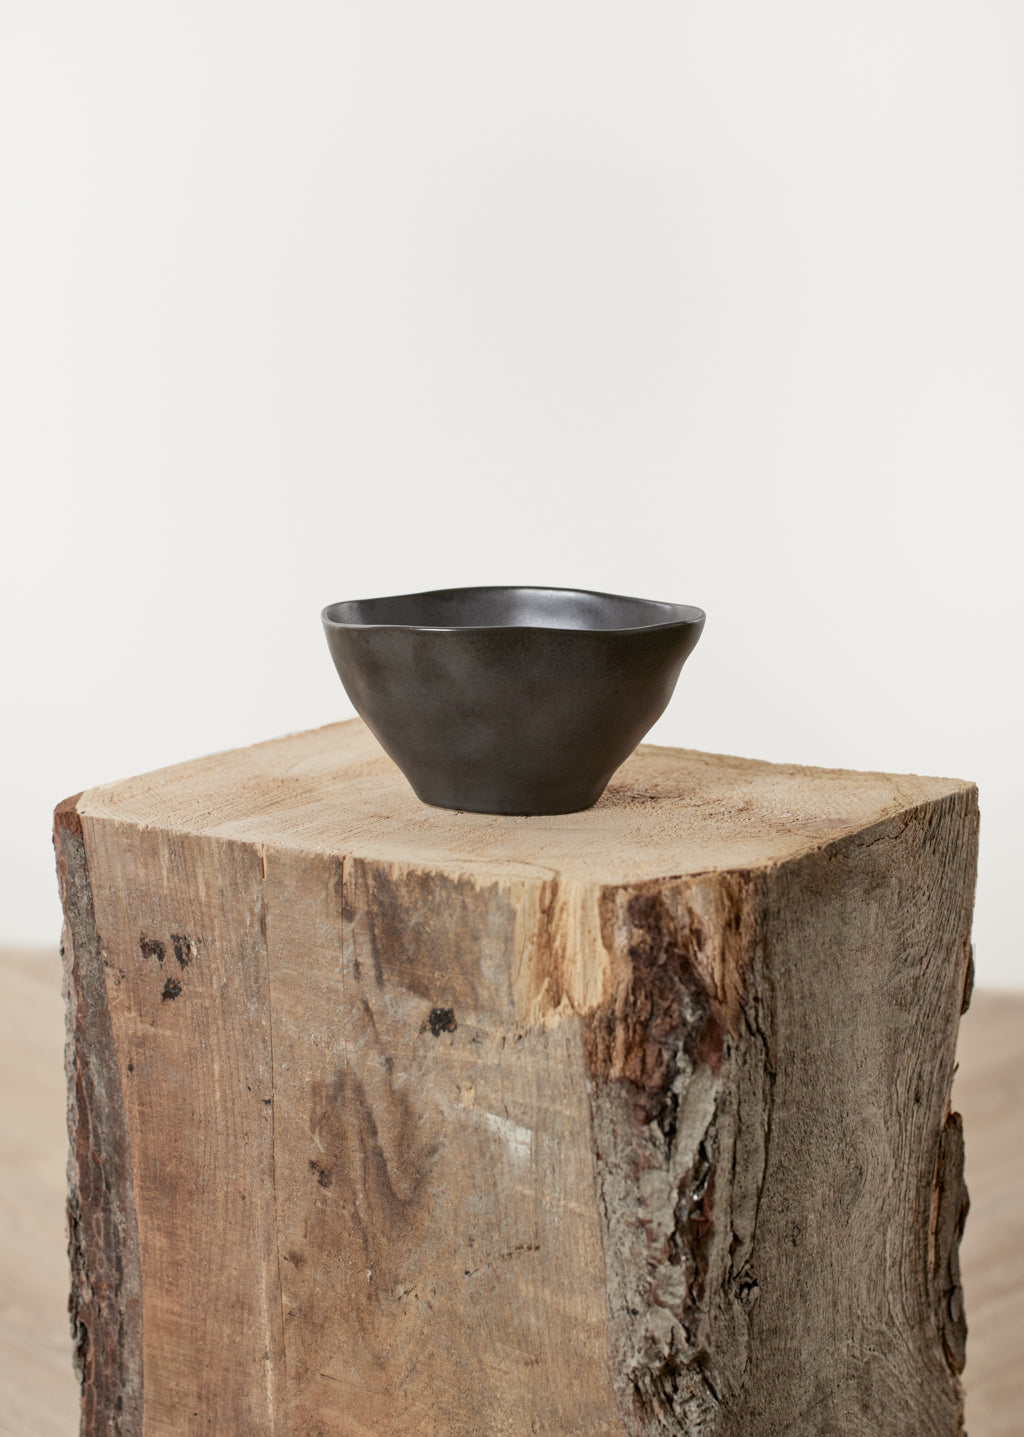 Medium Black Ceramic Bowl